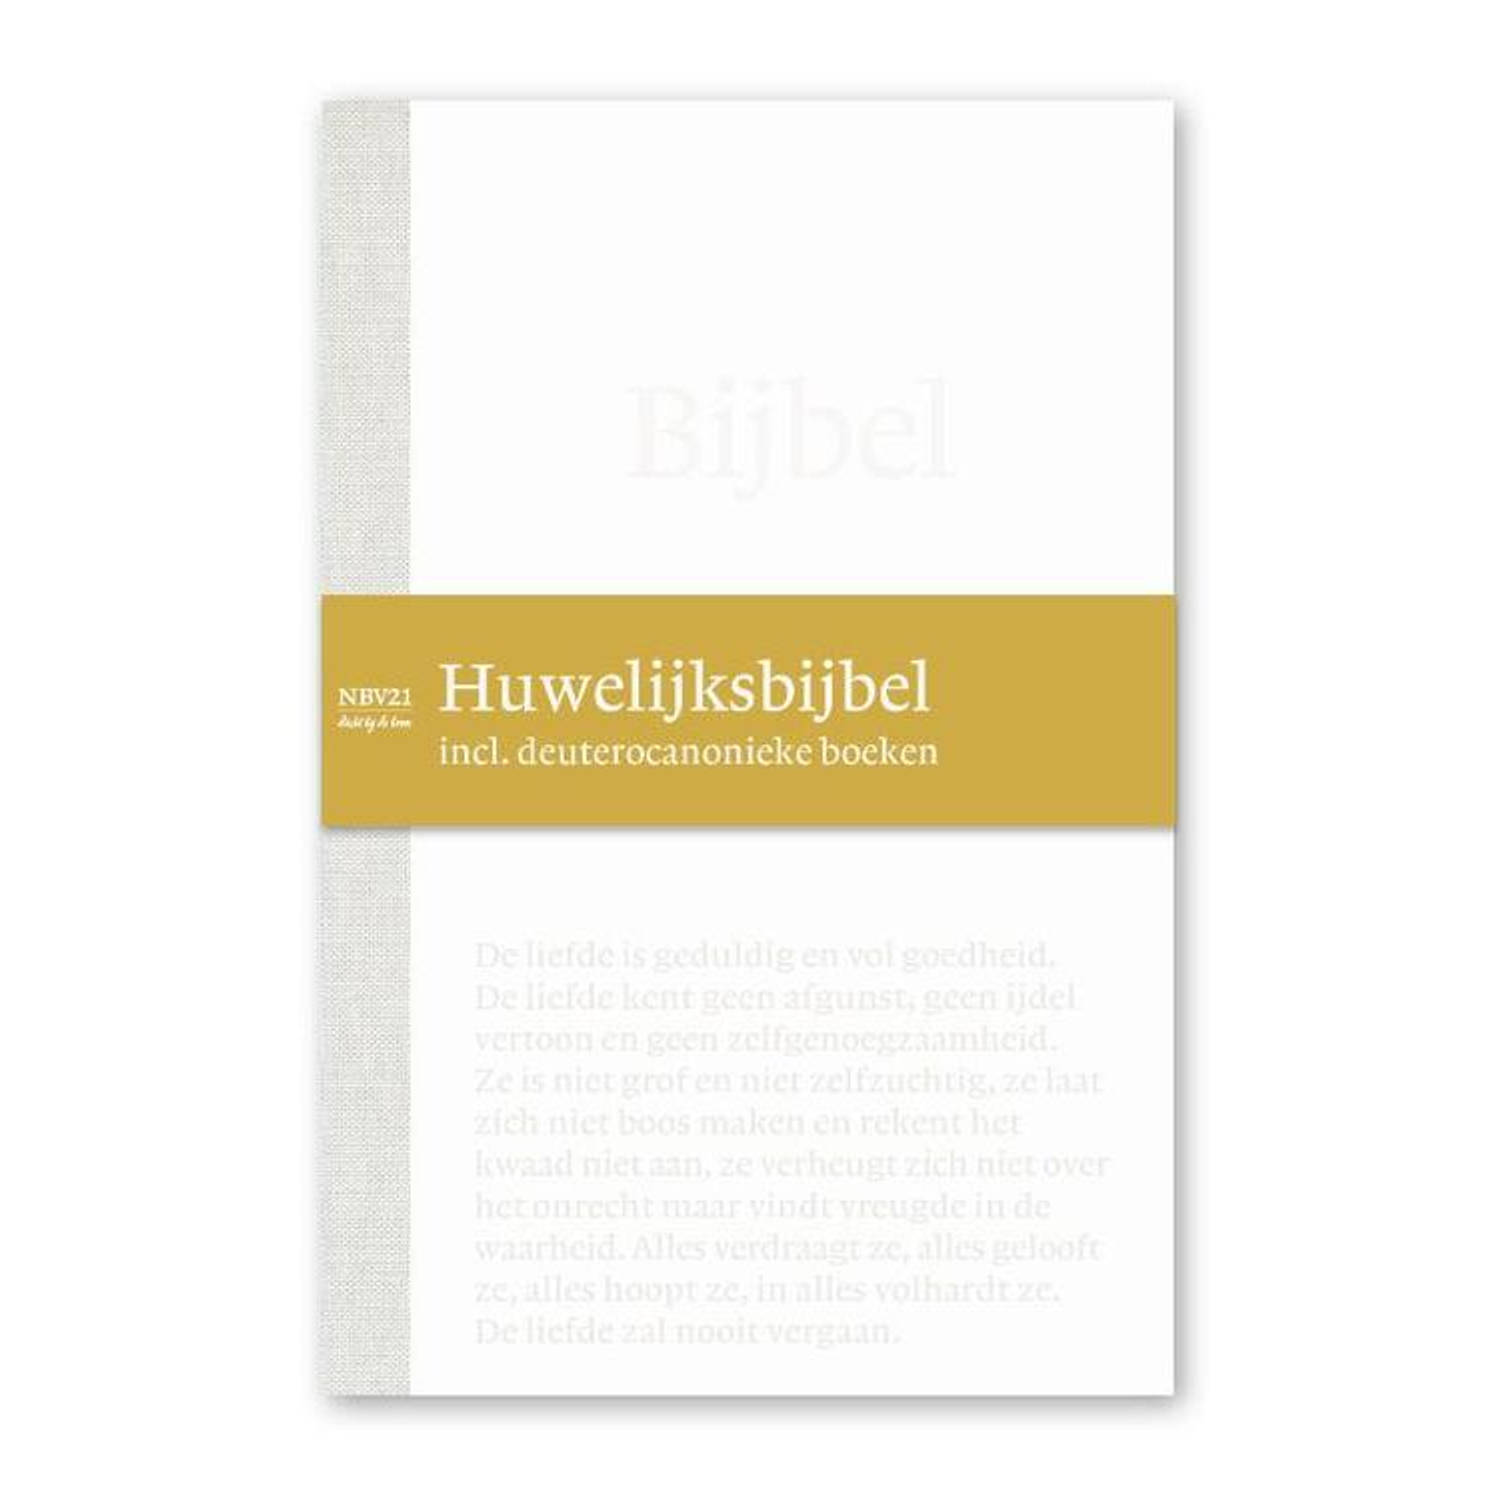 NBV21 Huwelijksbijbel incl. deuterocanonieke boeken - (ISBN:9789089124074)